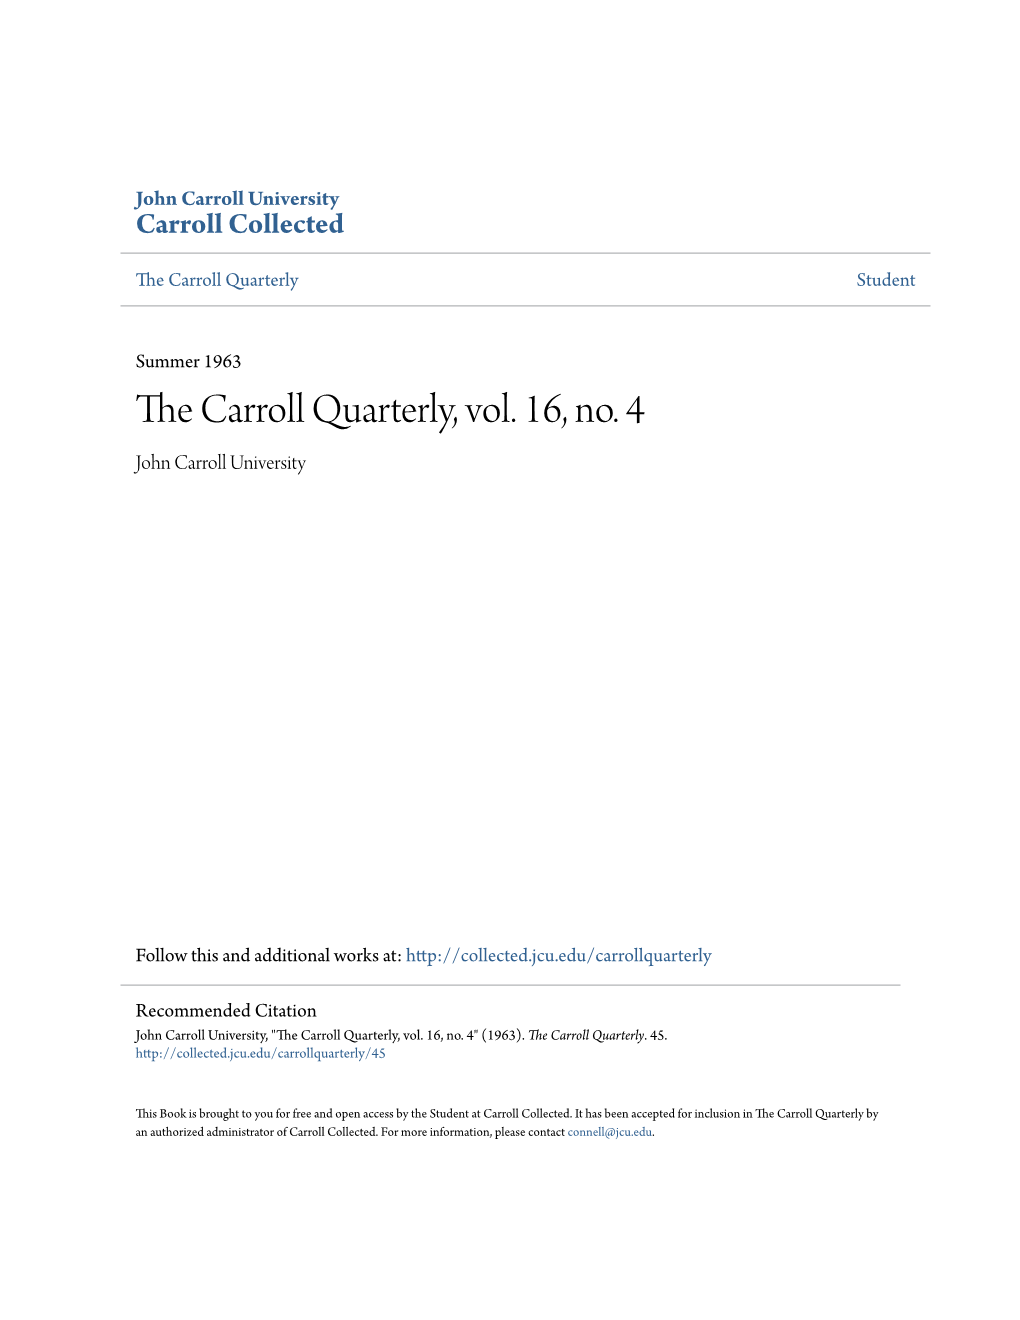 The Carroll Quarterly, Vol. 16, No. 4